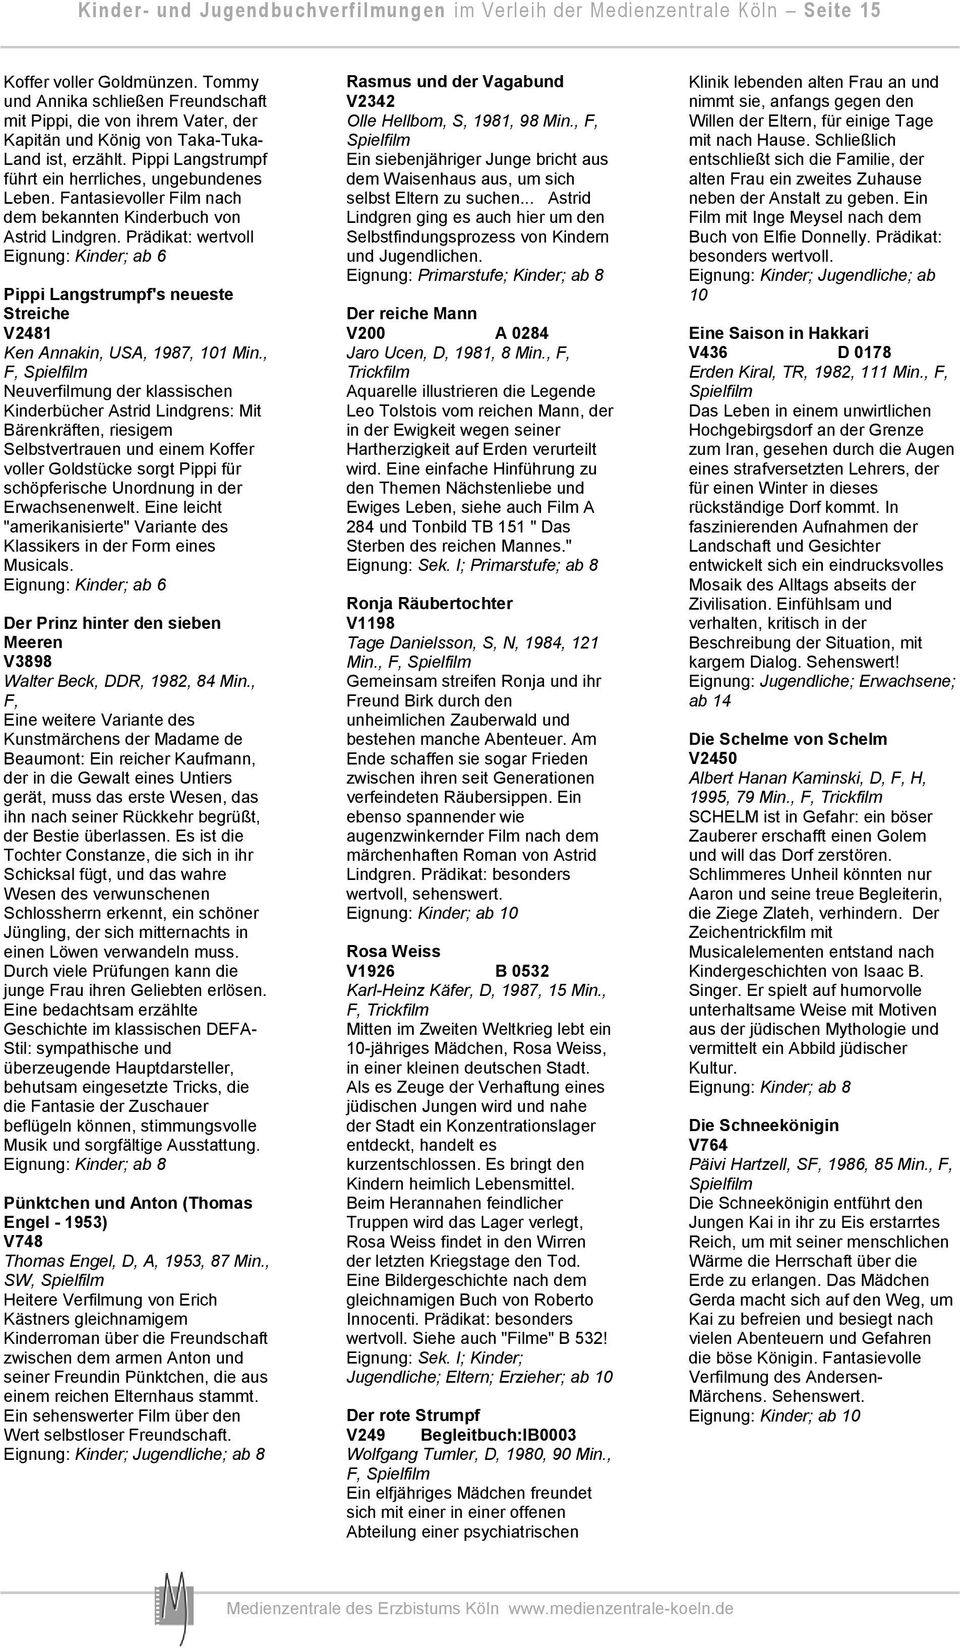 Fantasievoller Film nach dem bekannten Kinderbuch von Astrid Lindgren. Prädikat: wertvoll Pippi Langstrumpf's neueste Streiche V2481 Ken Annakin, USA, 1987, 101 Min.